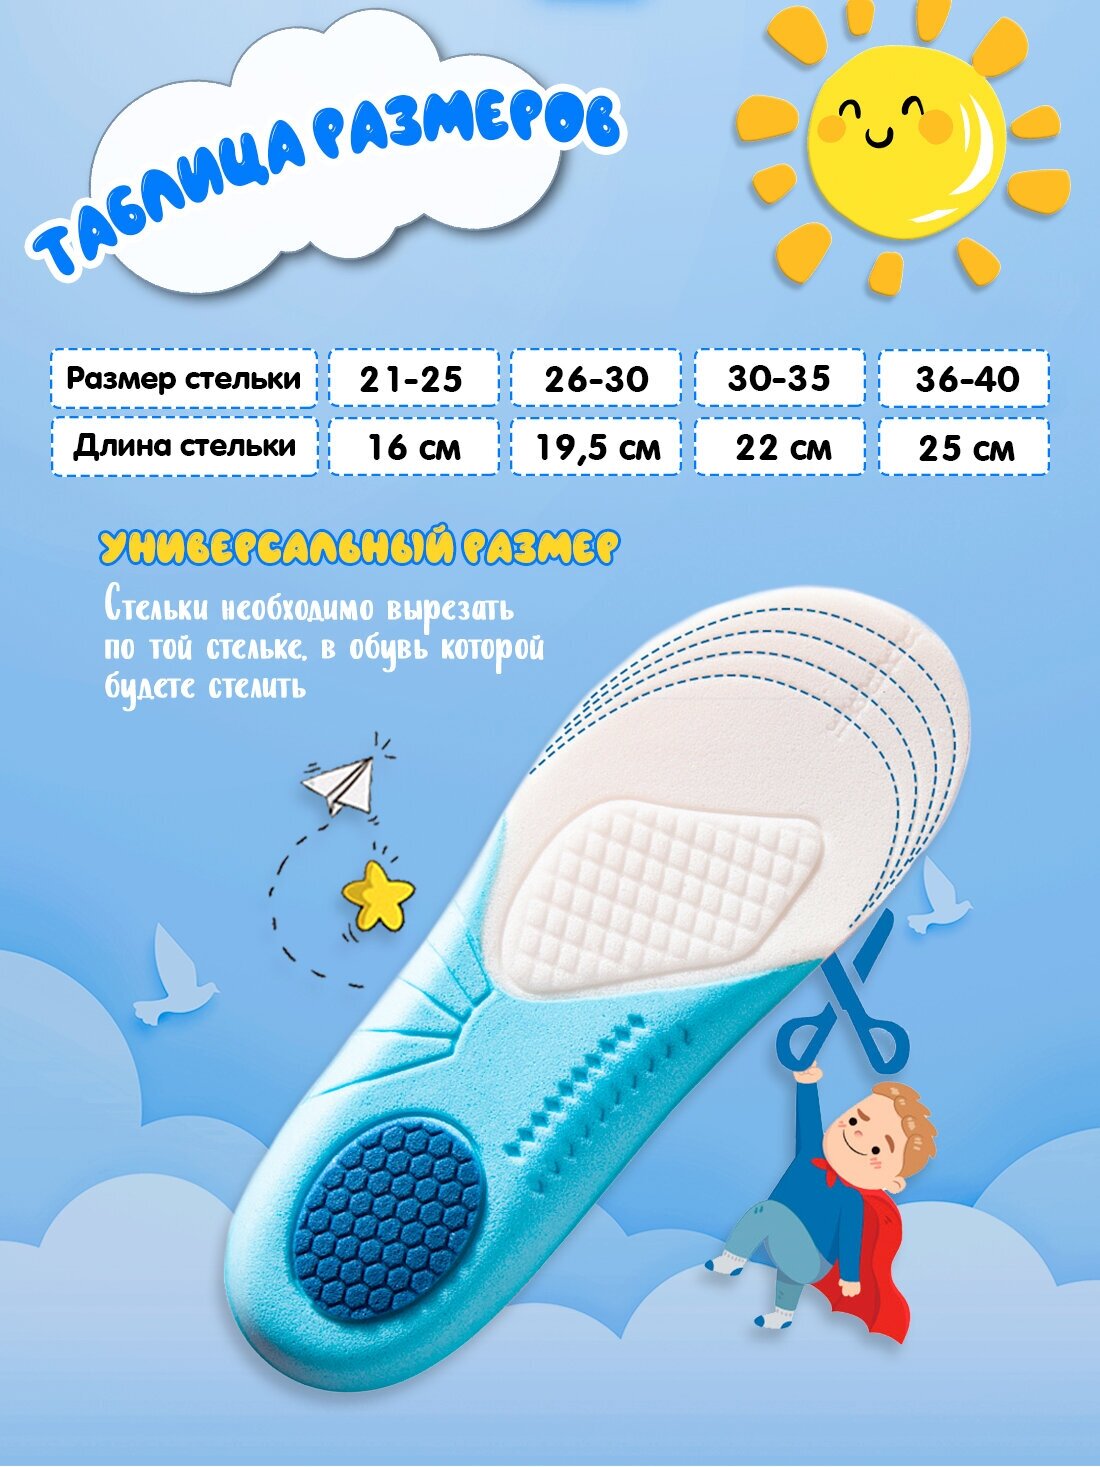 Стельки детские Super Feet для обуви мягкие дышащие Размер 36-40 (25 см)